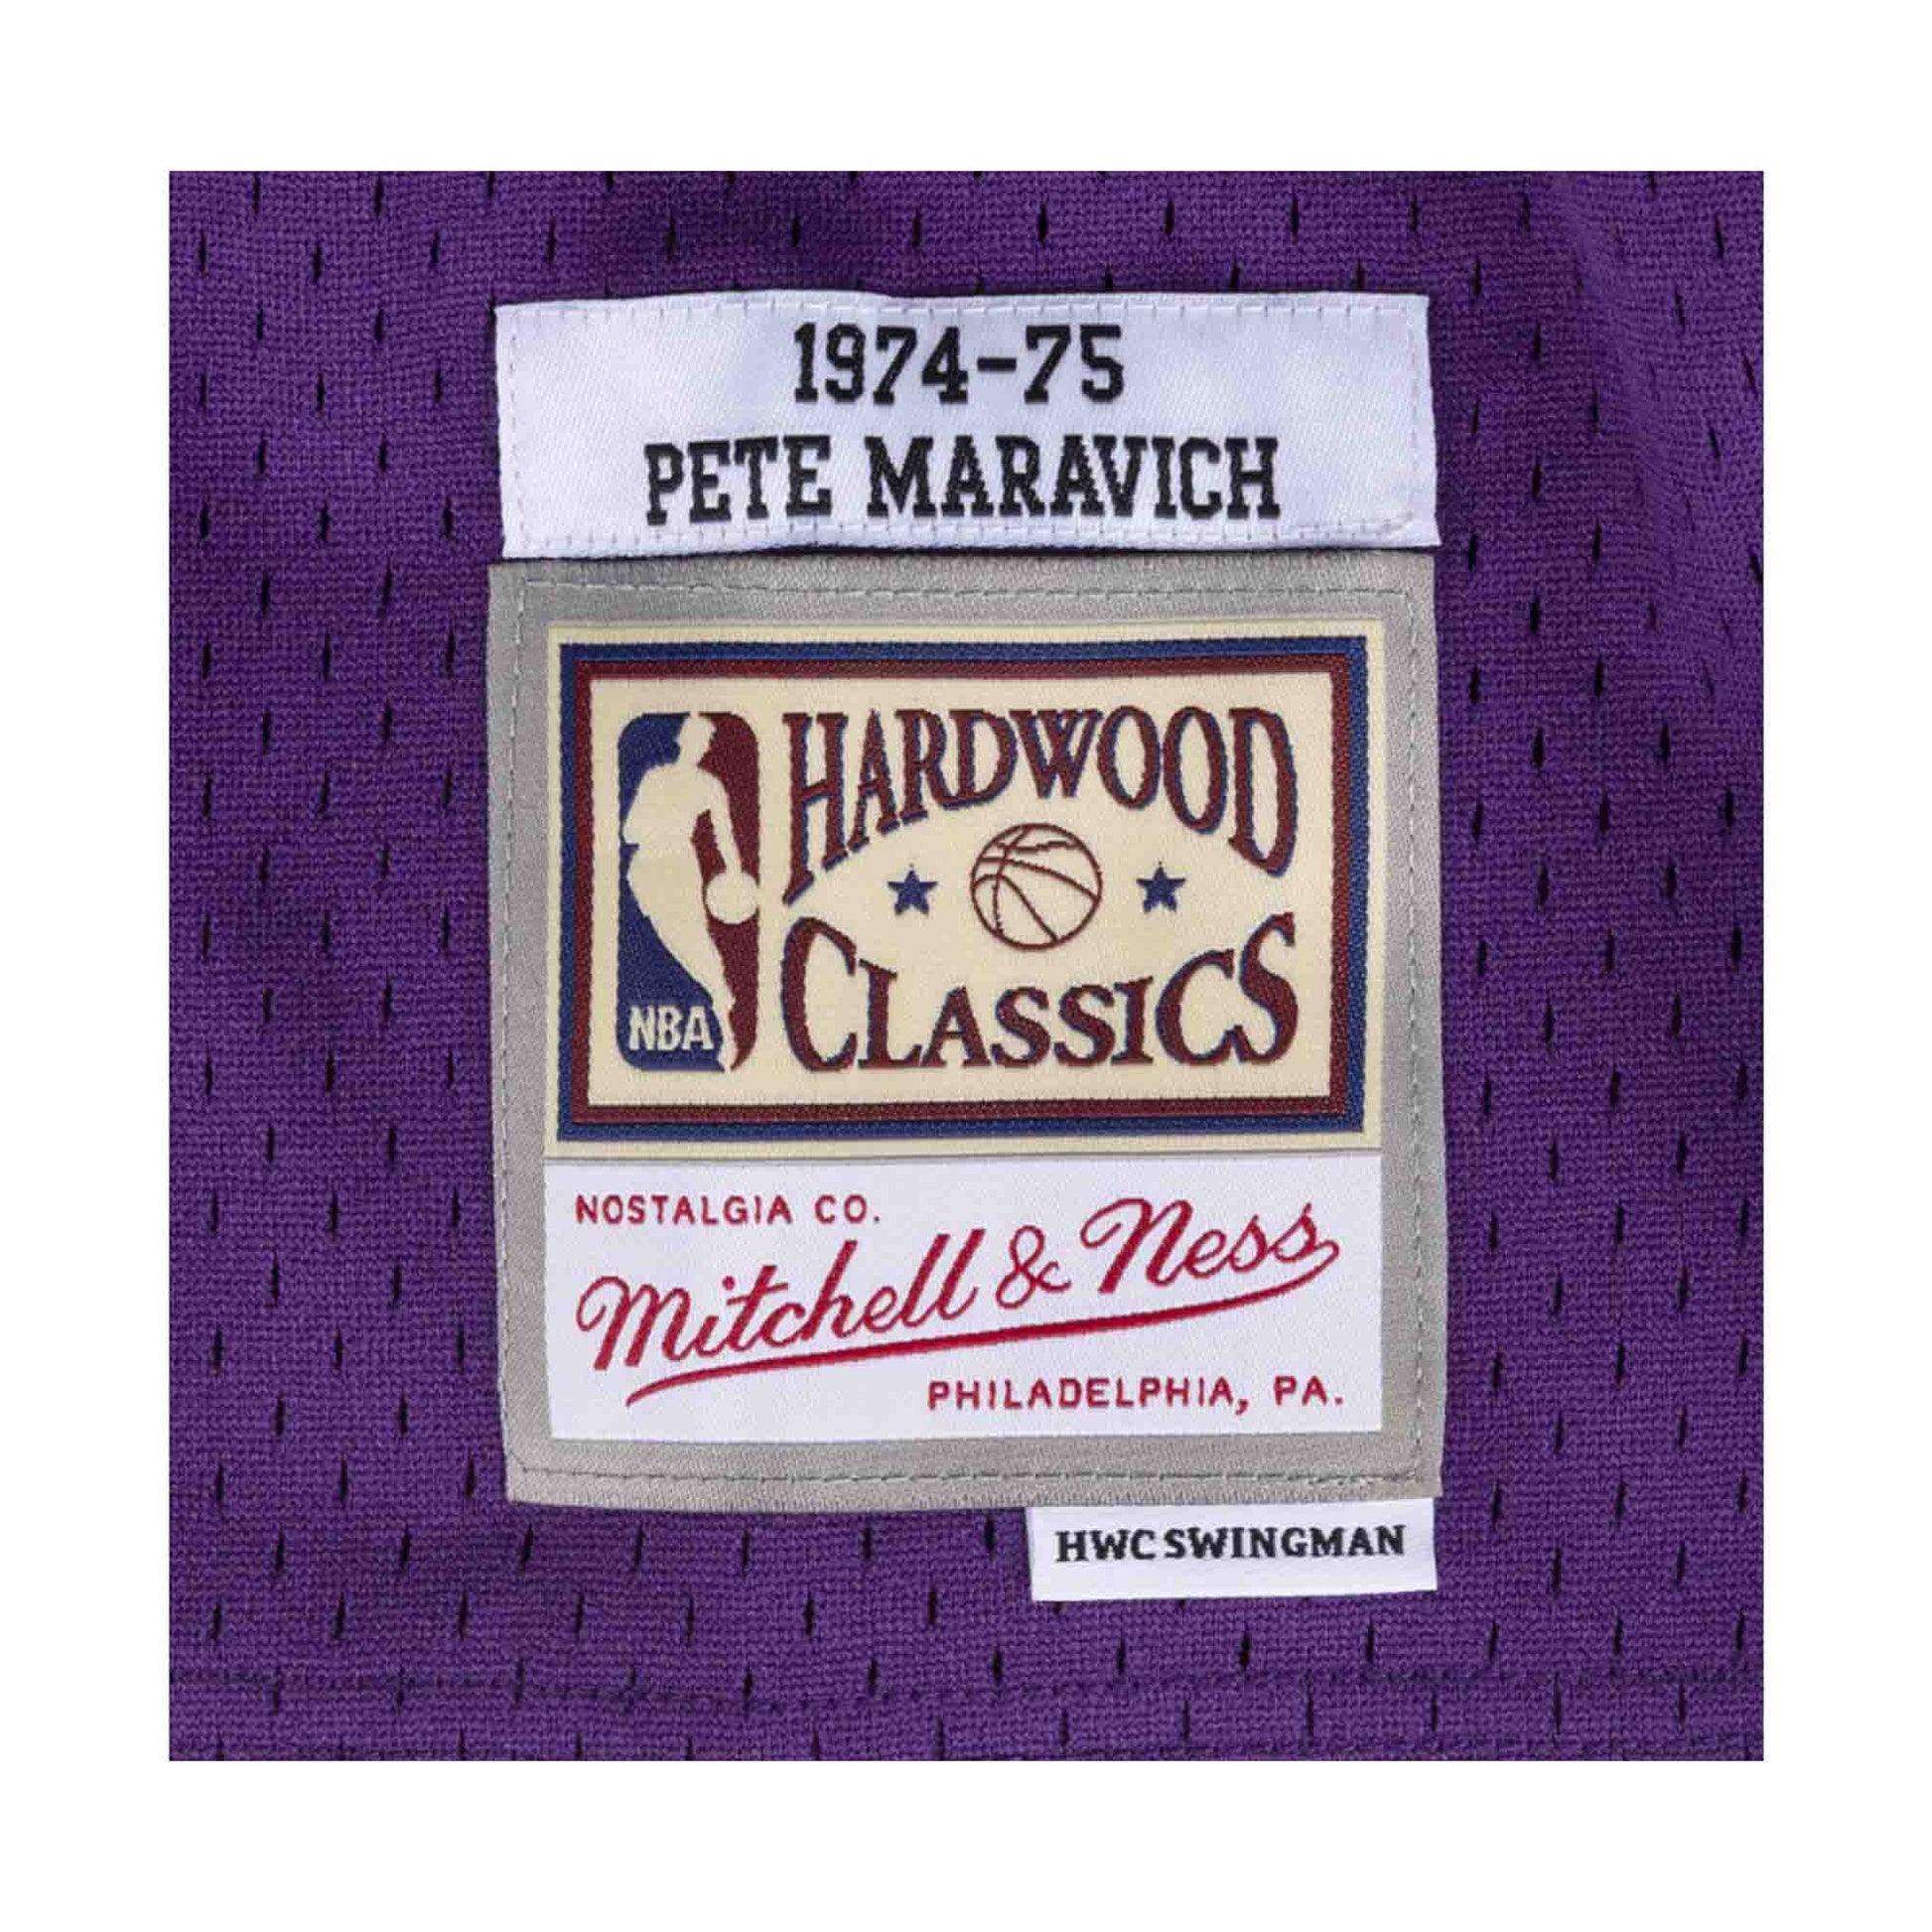 Swingman Jersey New Orleans Jazz Road 1974-75 Pete Maravich - Shop